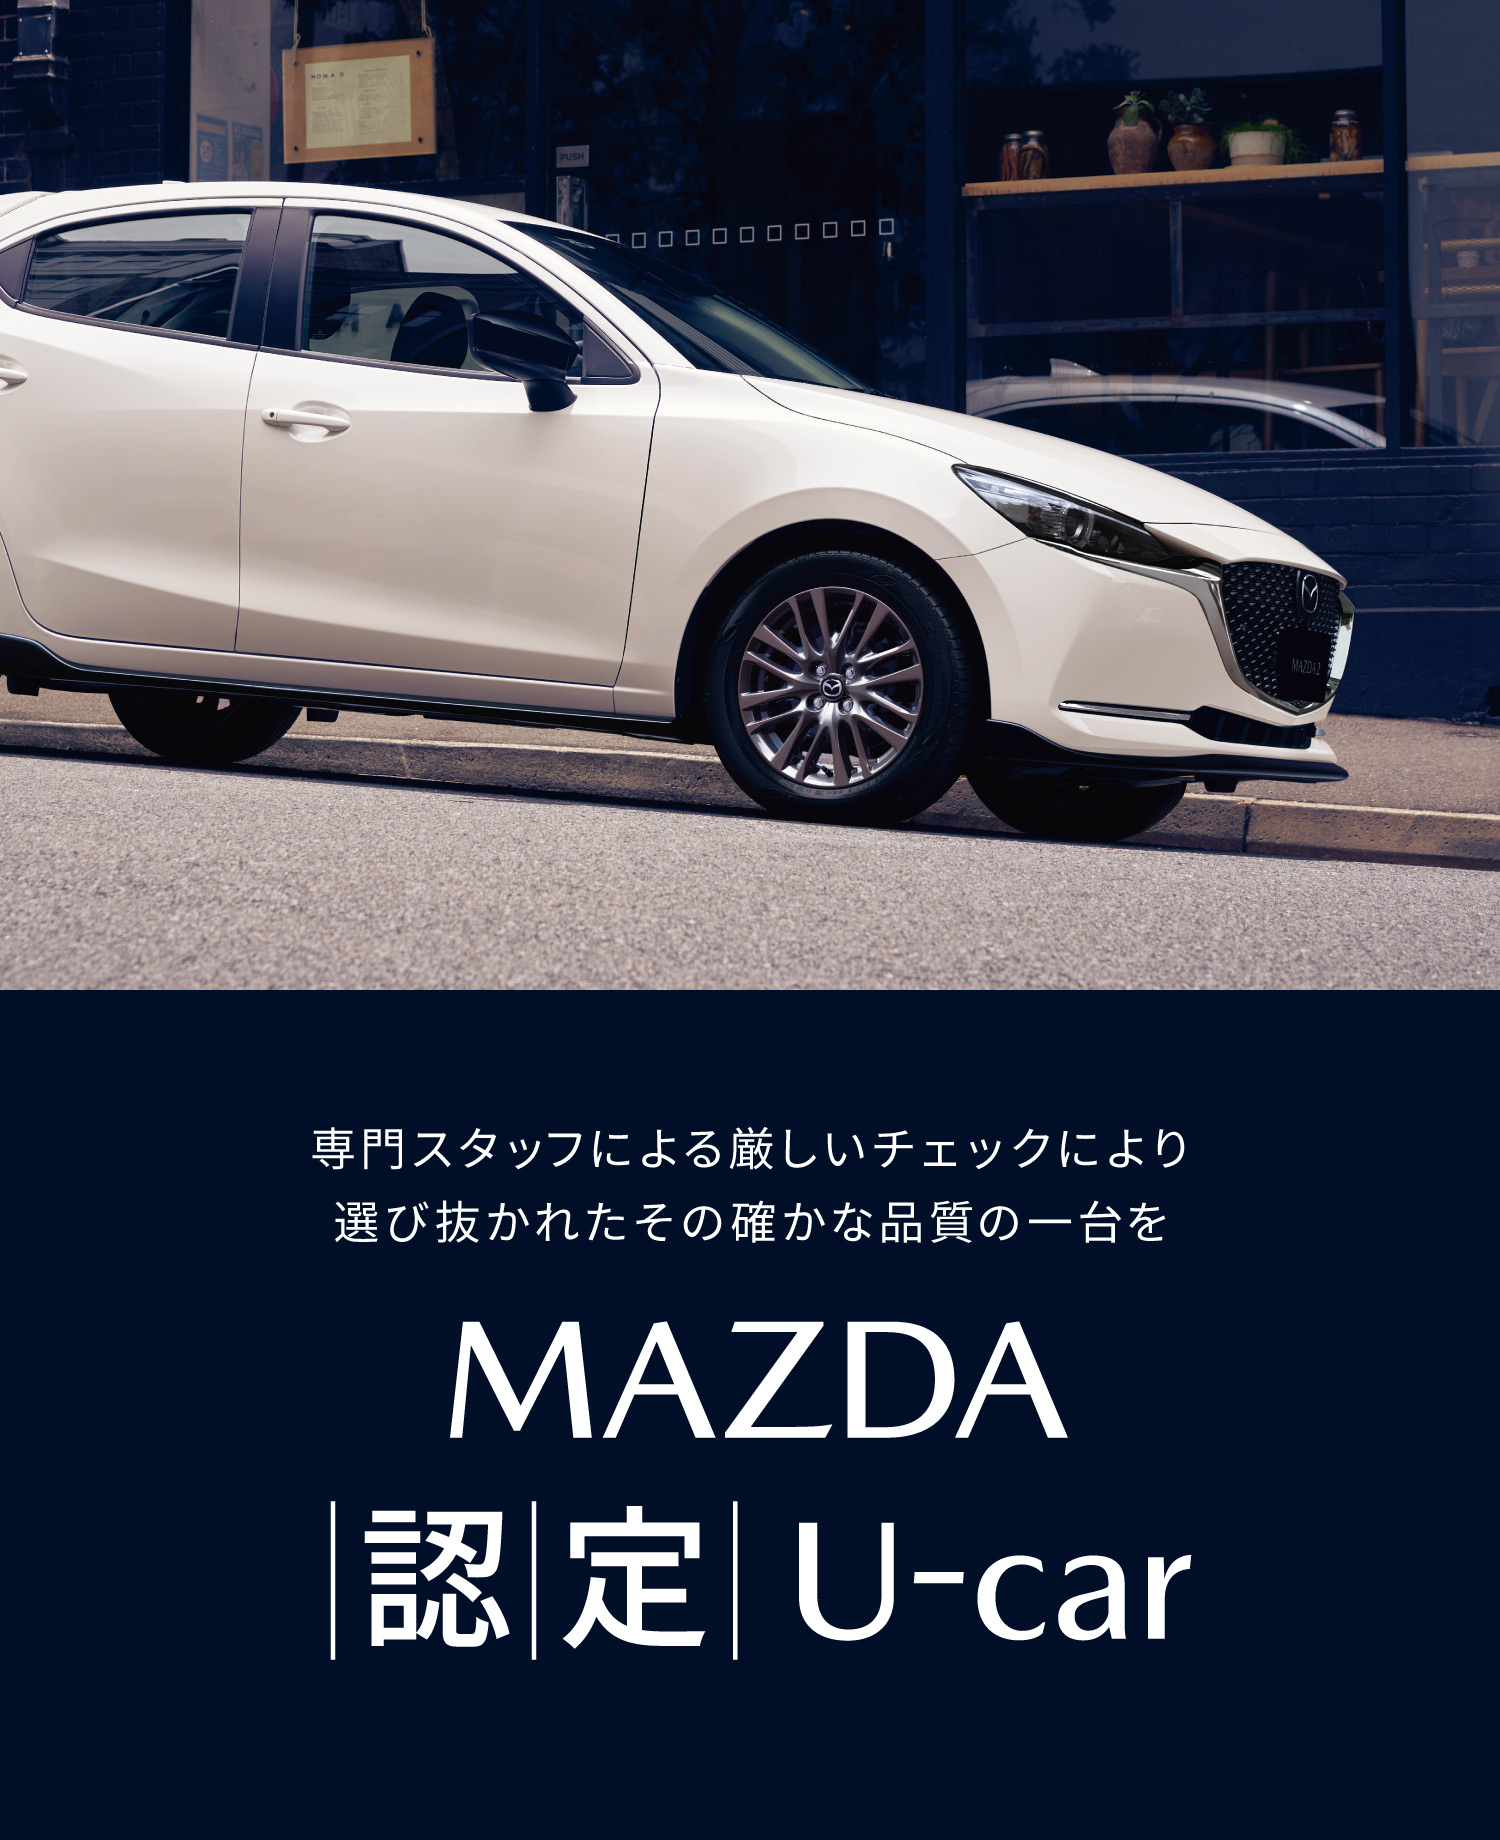 MAZDA 認定 U-CAR